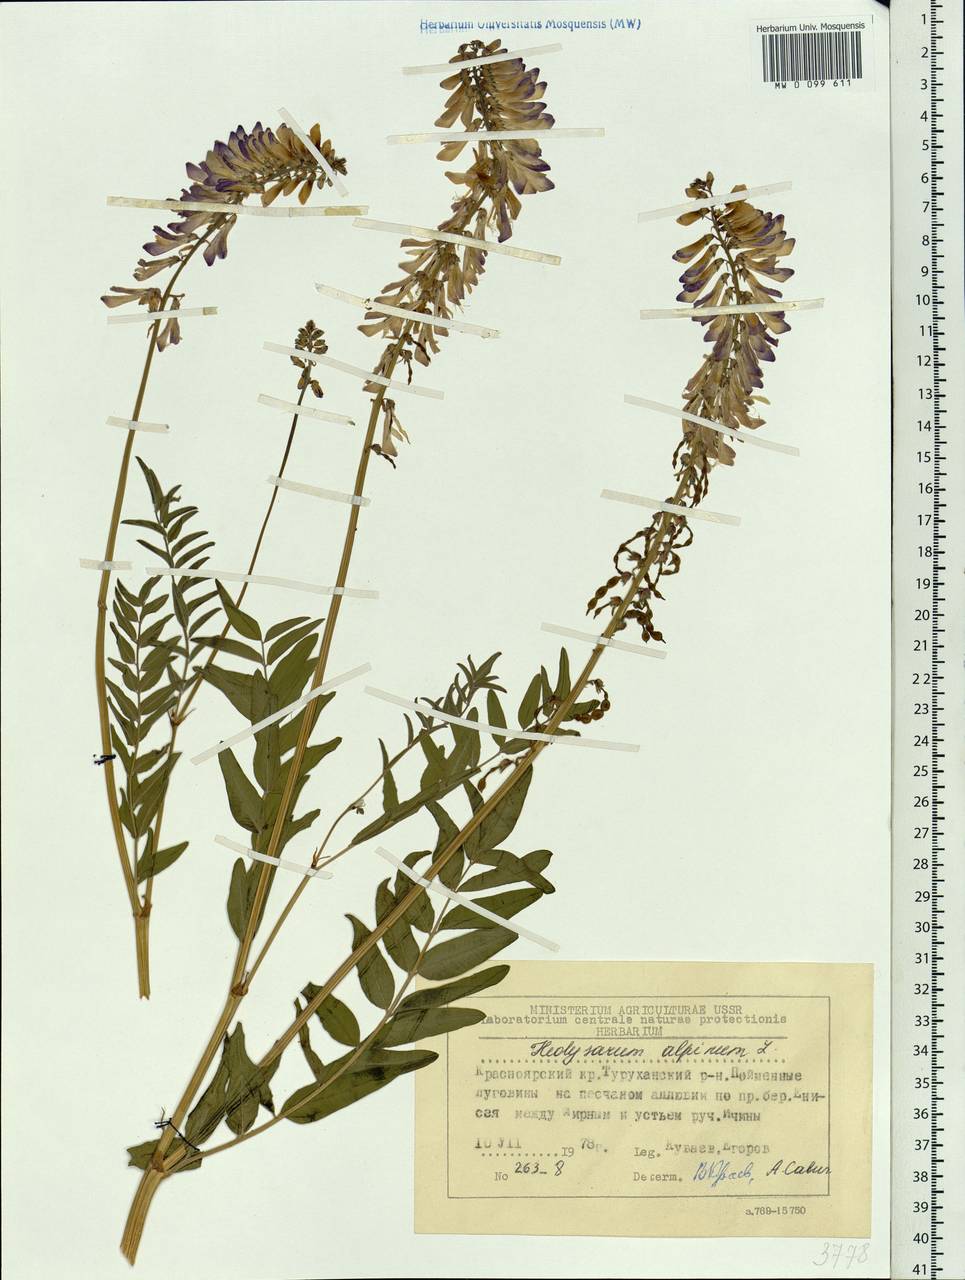 Hedysarum alpinum L., Siberia, Central Siberia (S3) (Russia)